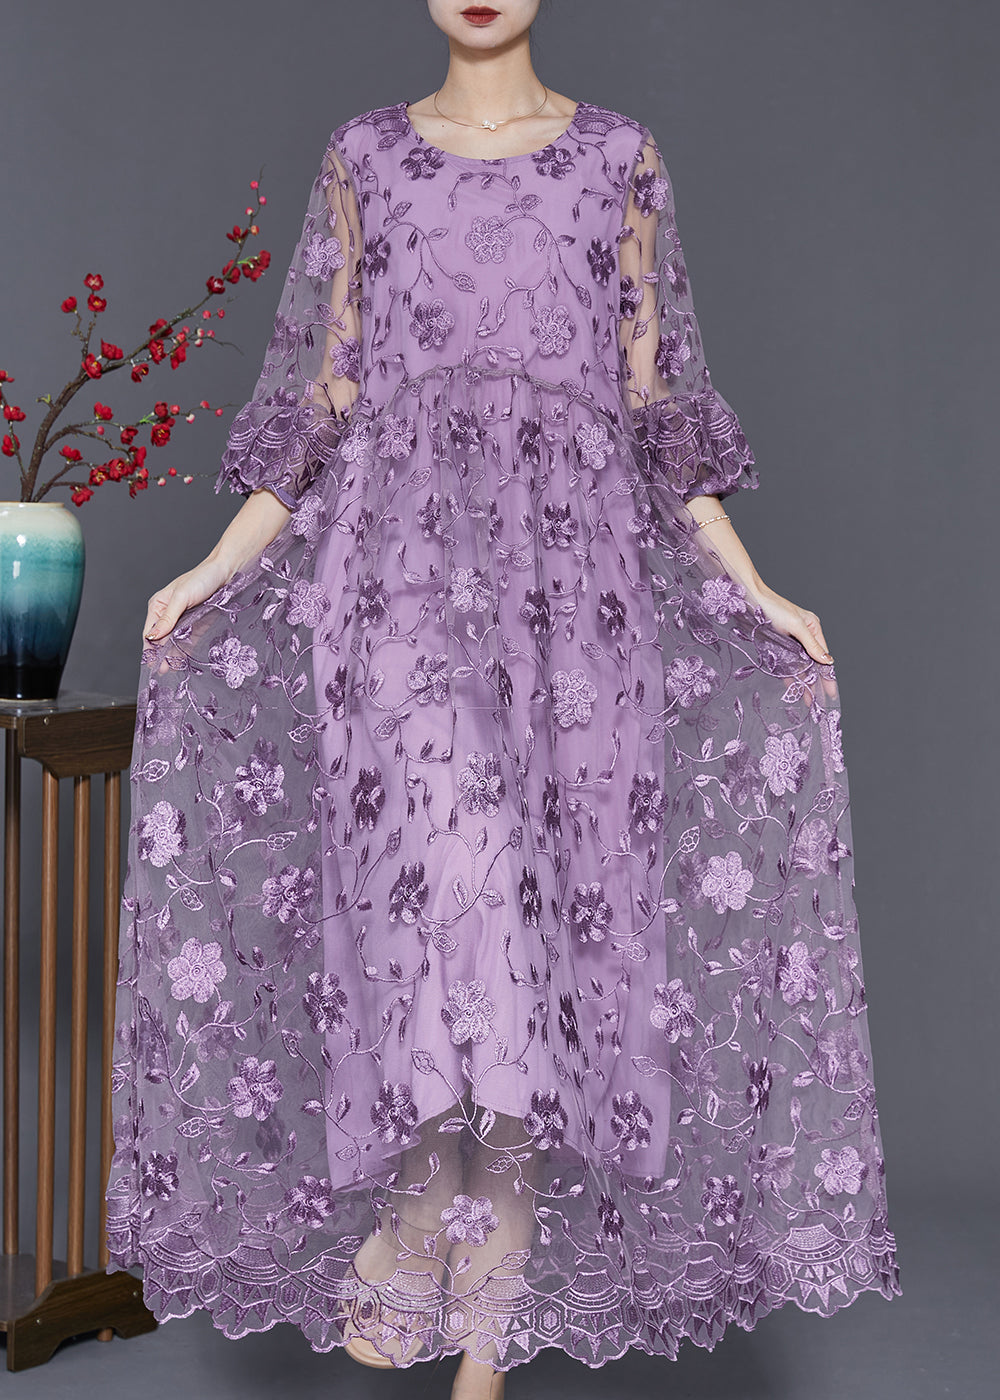 Handmade Purple Embroidered Tulle Dress Bracelet Sleeve